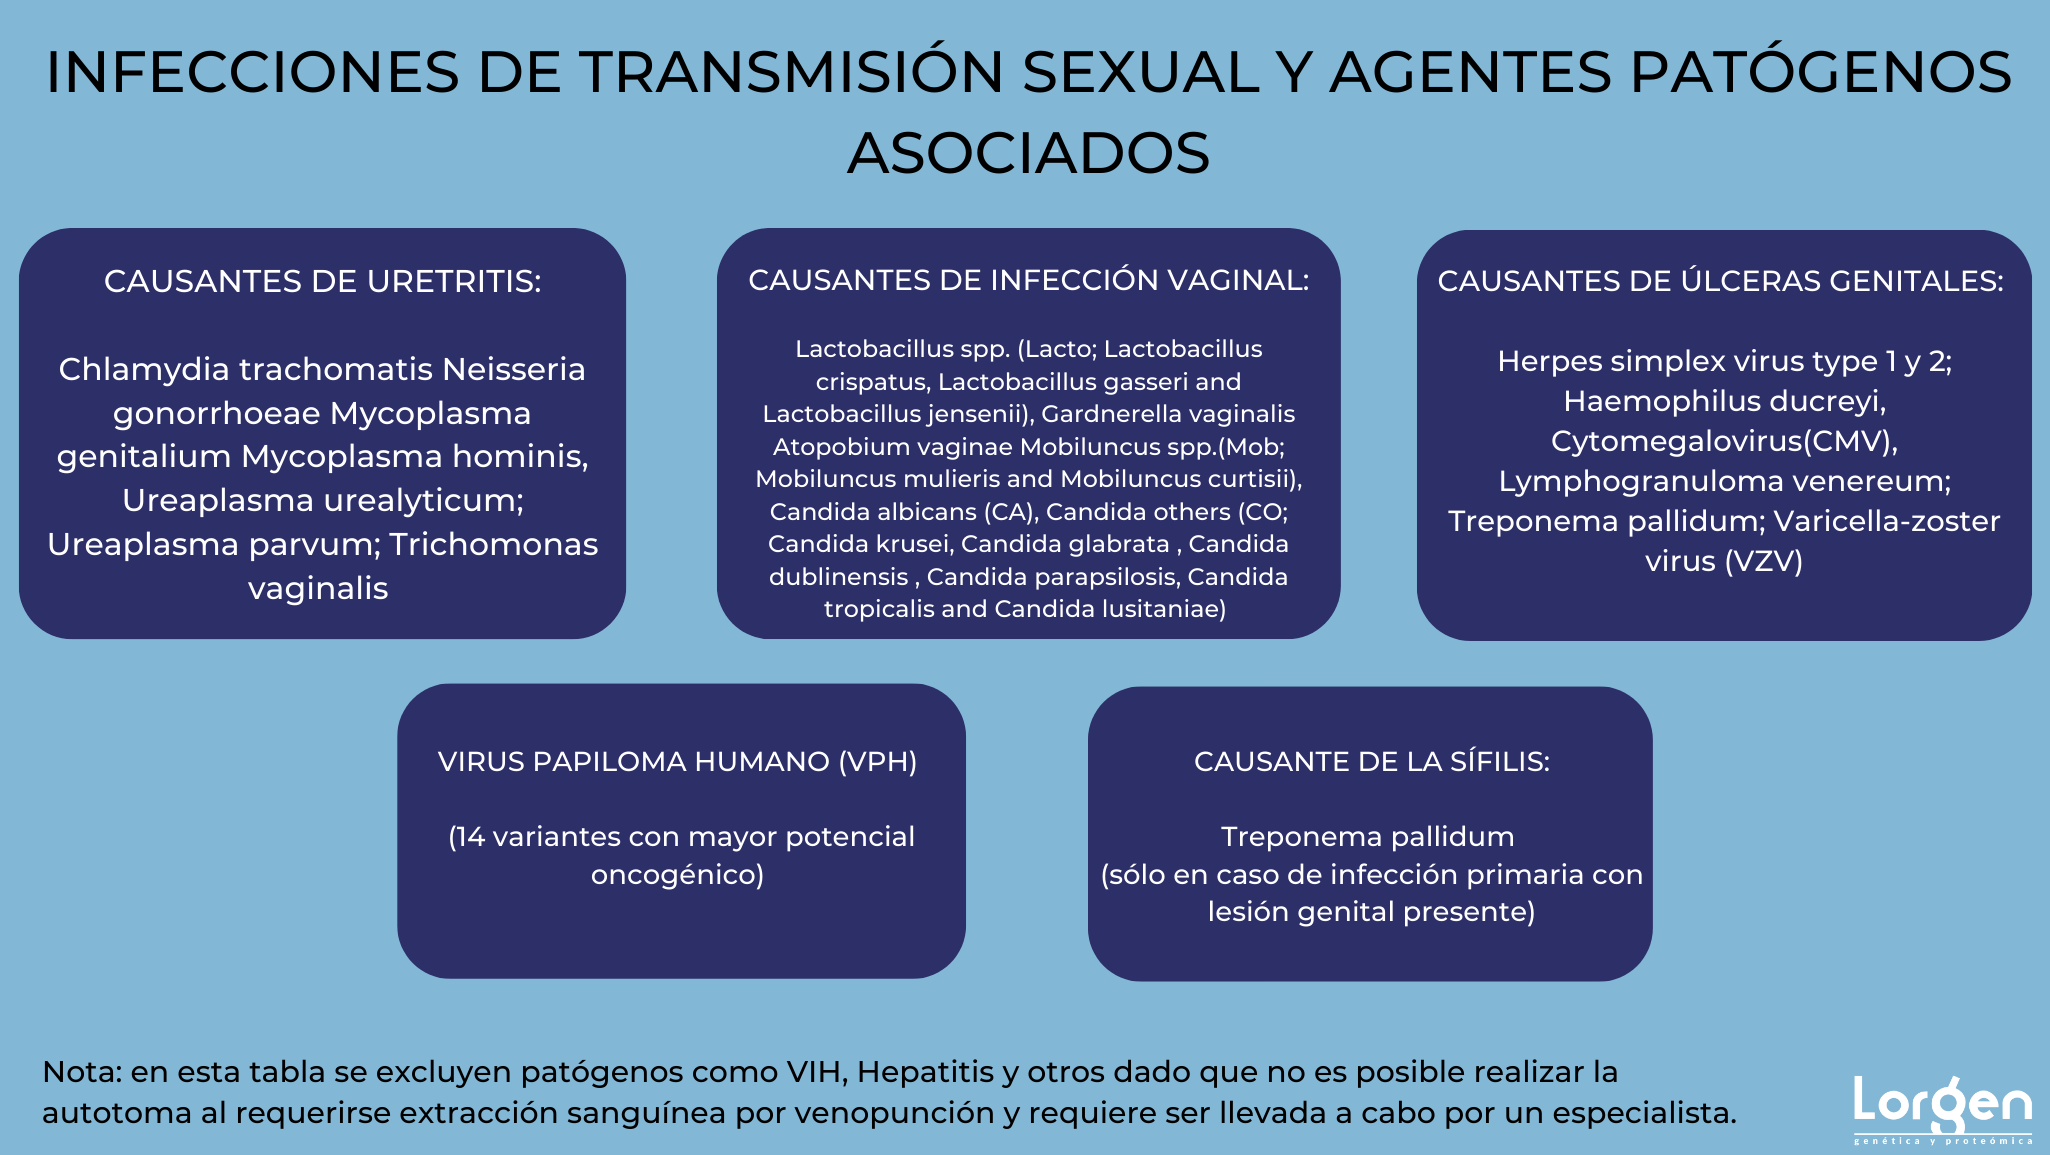 LAS INFECCIONES DE TRANSMISIÓN SEXUAL: ¿SIGUEN SIENDO UN TABÚ?